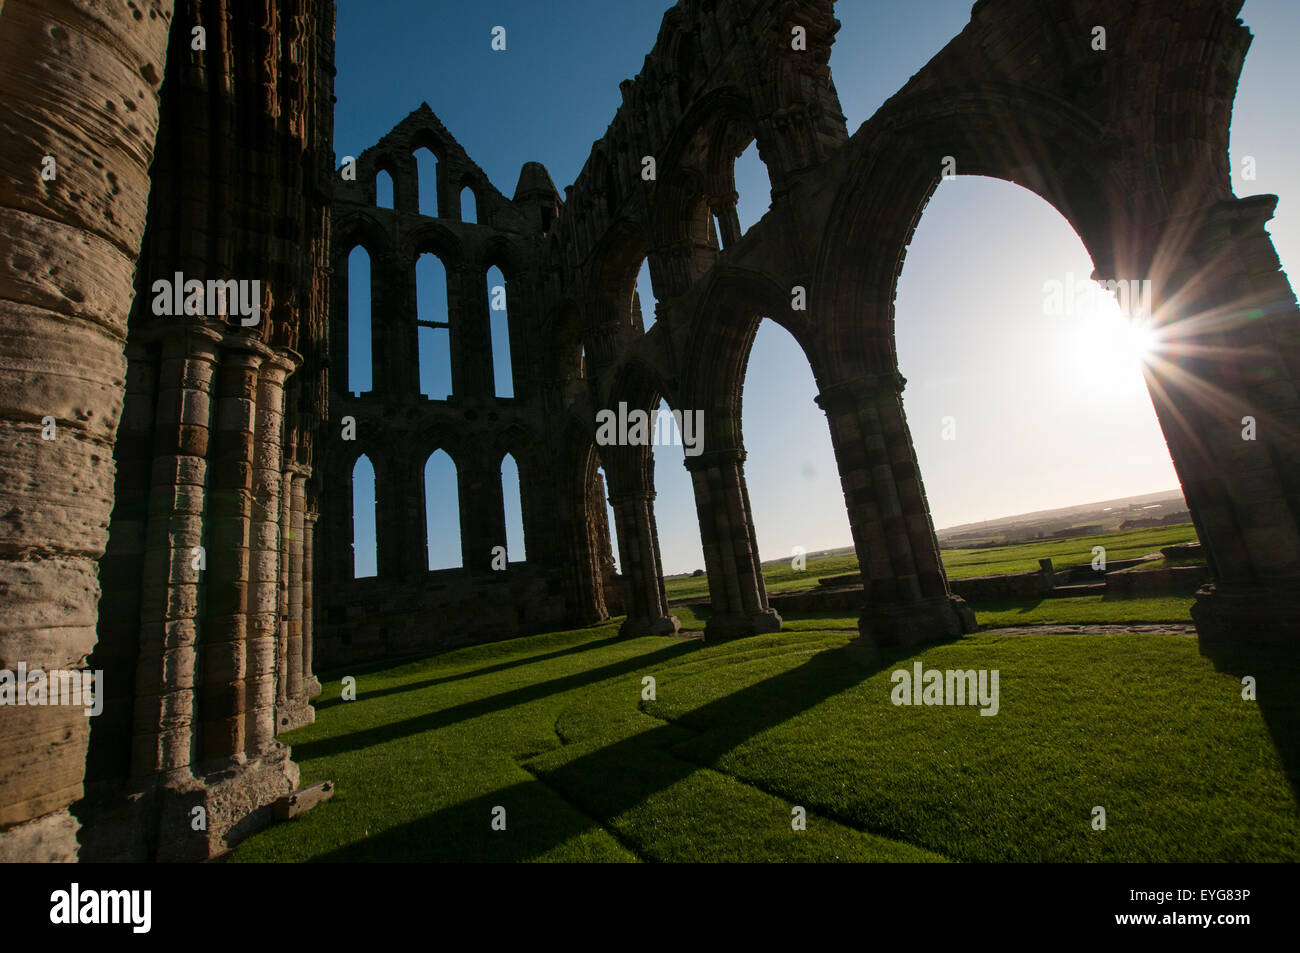 Au début de l'hiver la lumière du matin dans les ruines de l'abbaye de Whitby, North Yorkshire Angleterre UK Banque D'Images